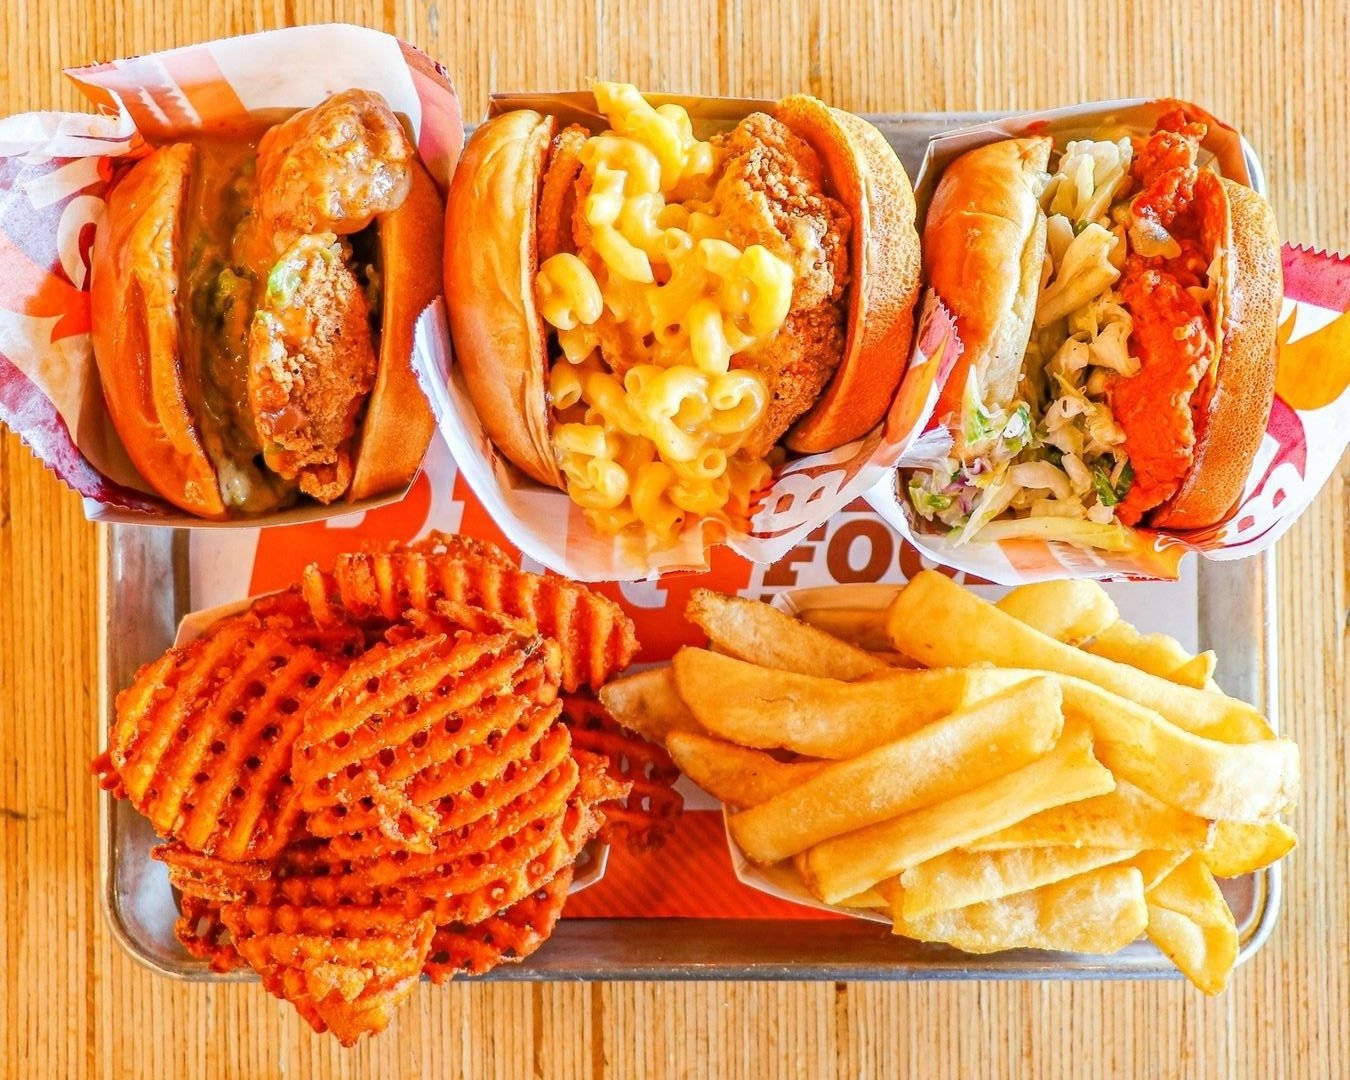 Großeportionen Von Fast Food Wallpaper